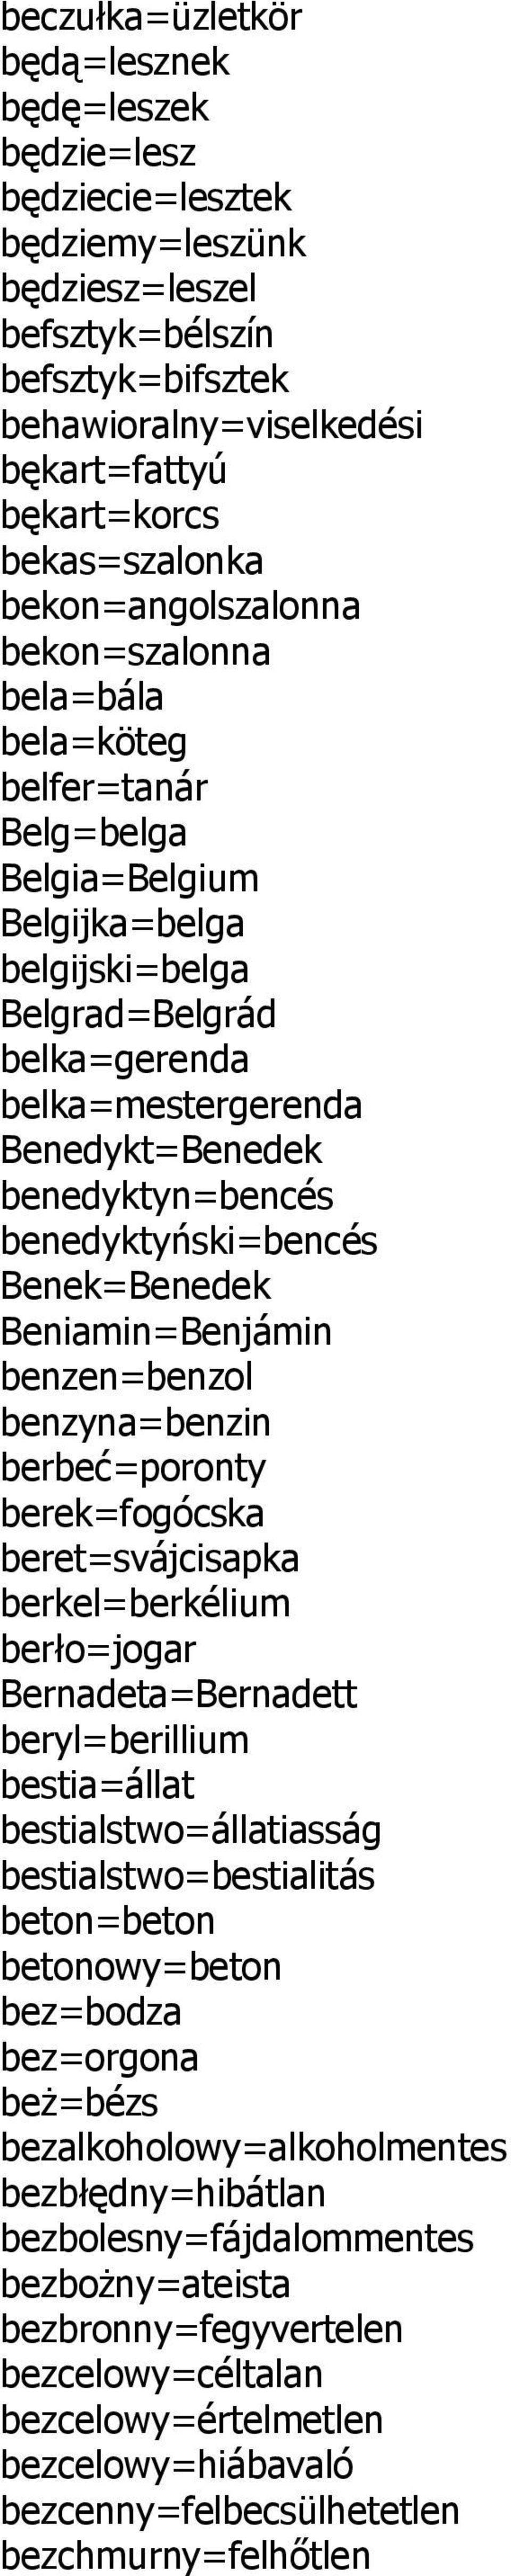 Benedykt=Benedek benedyktyn=bencés benedyktyński=bencés Benek=Benedek Beniamin=Benjámin benzen=benzol benzyna=benzin berbeć=poronty berek=fogócska beret=svájcisapka berkel=berkélium berło=jogar